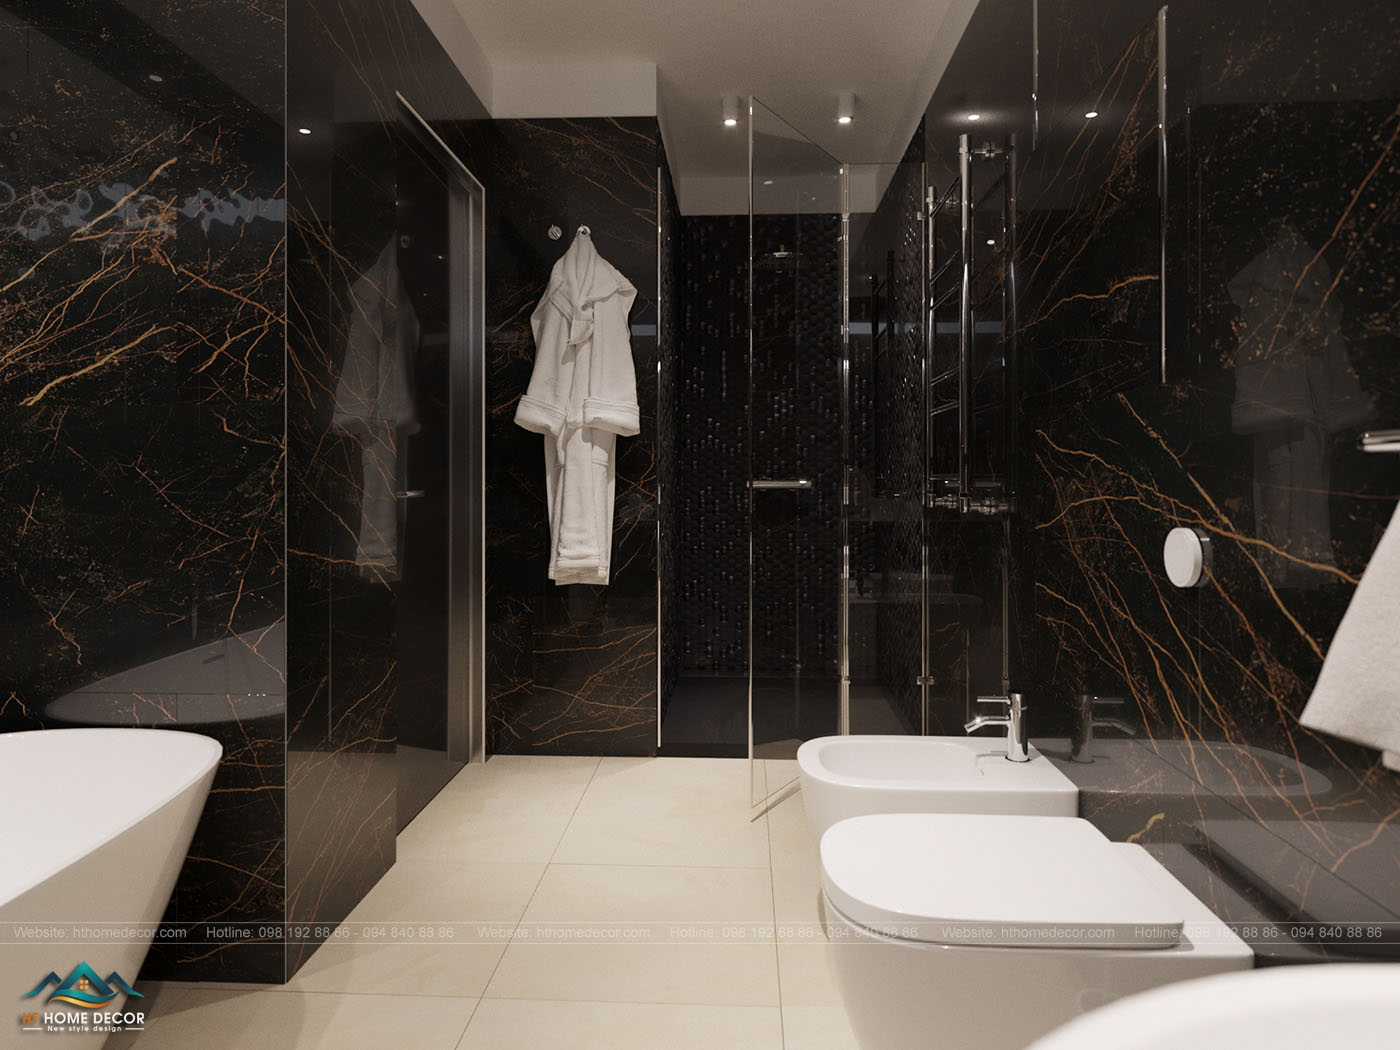 Phòng tắm được thiết kế độc đáo, ngăn nắp làm cho chung cư rộng rãi hơn bao giờ hết.